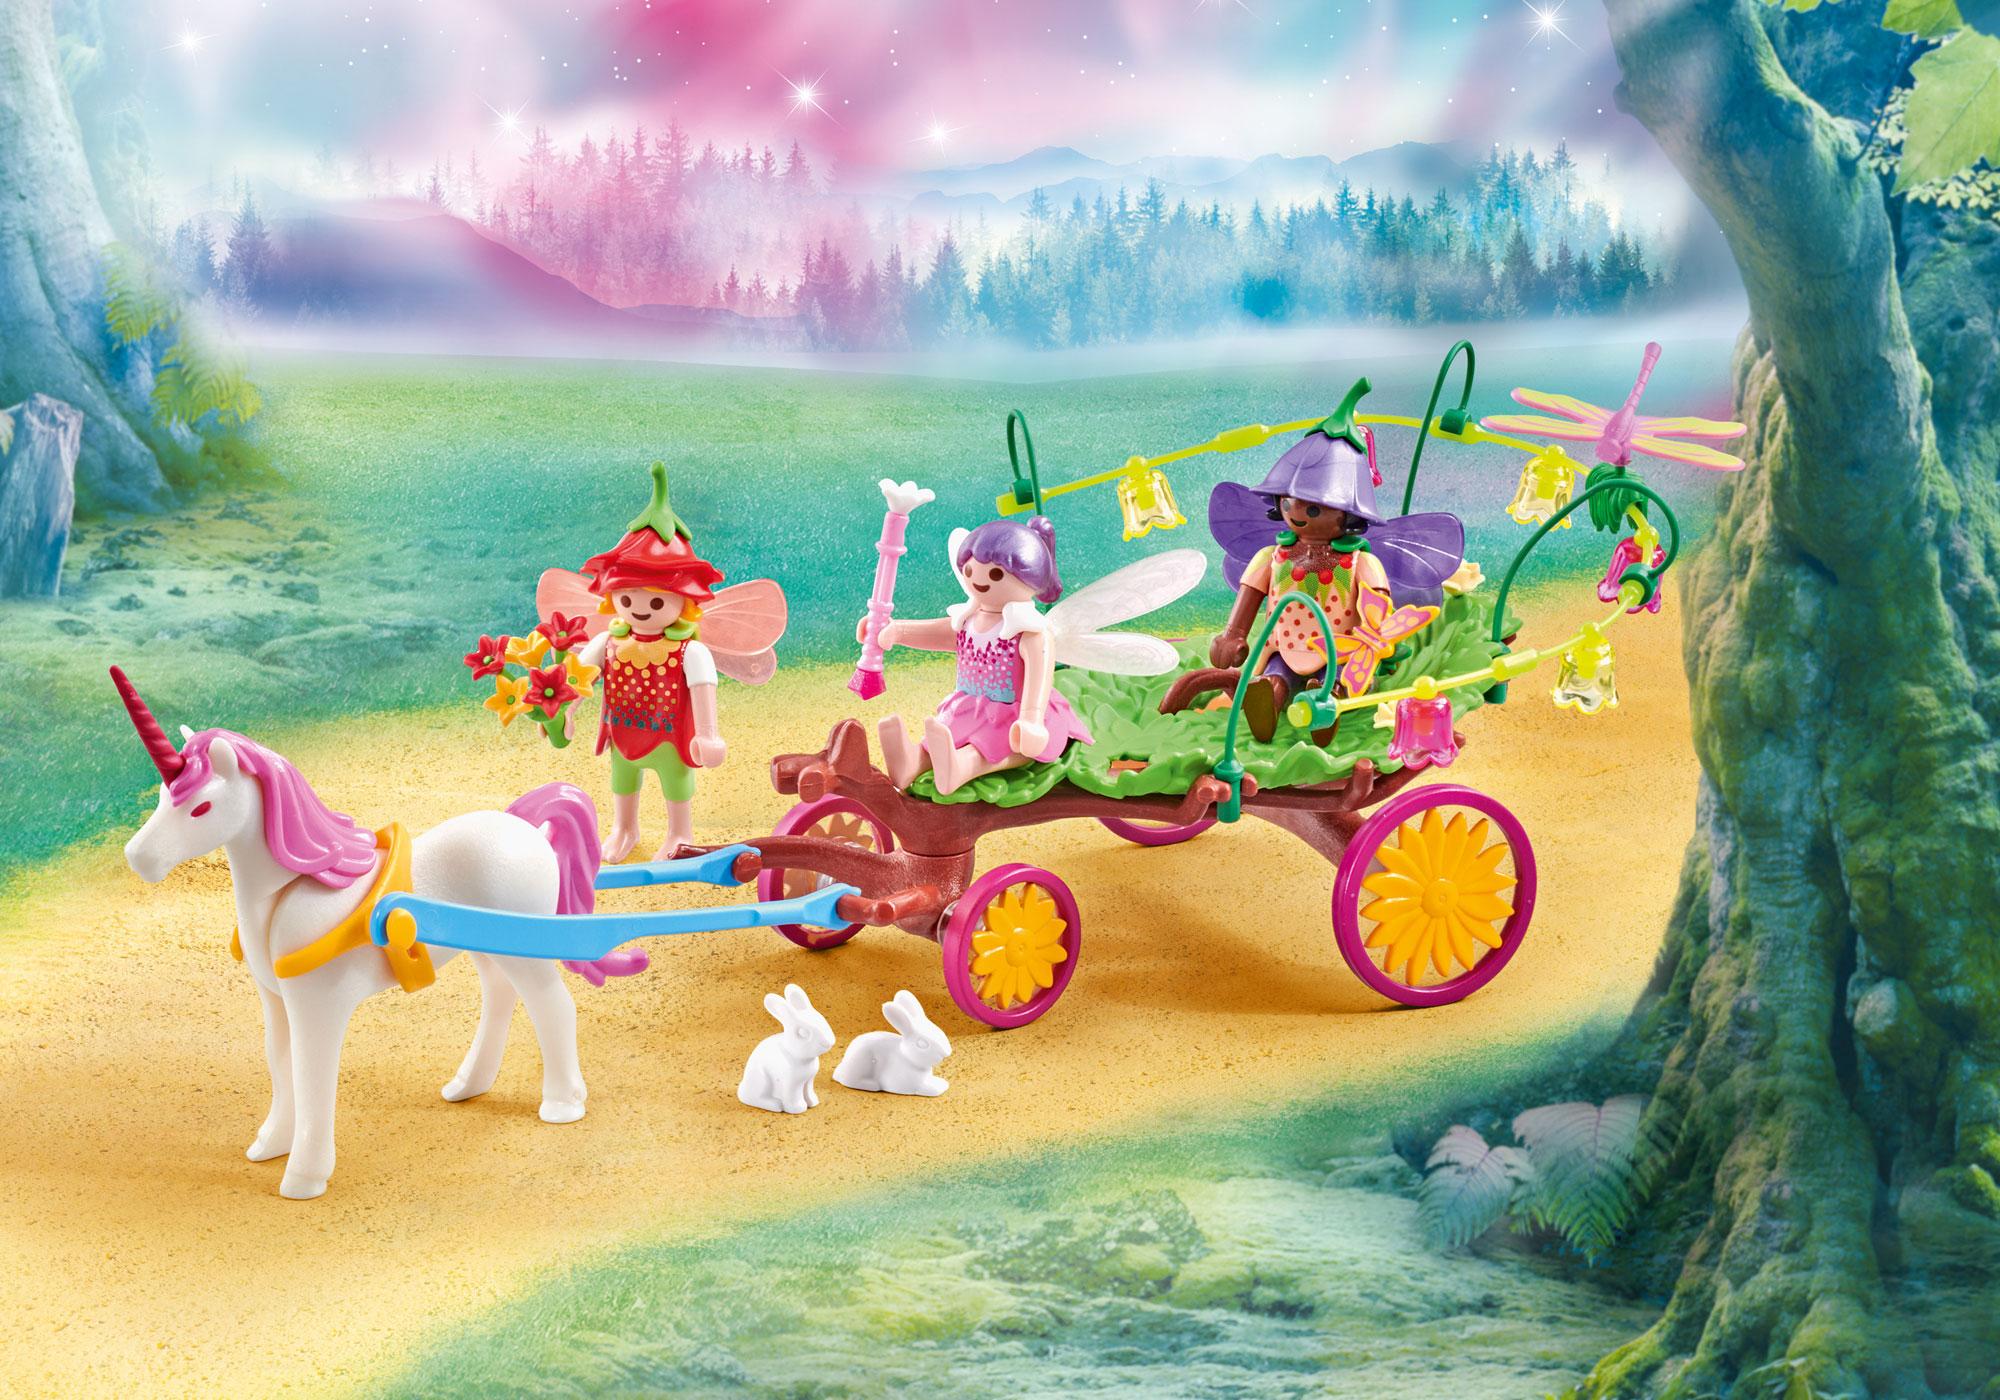 playmobil princesse licorne